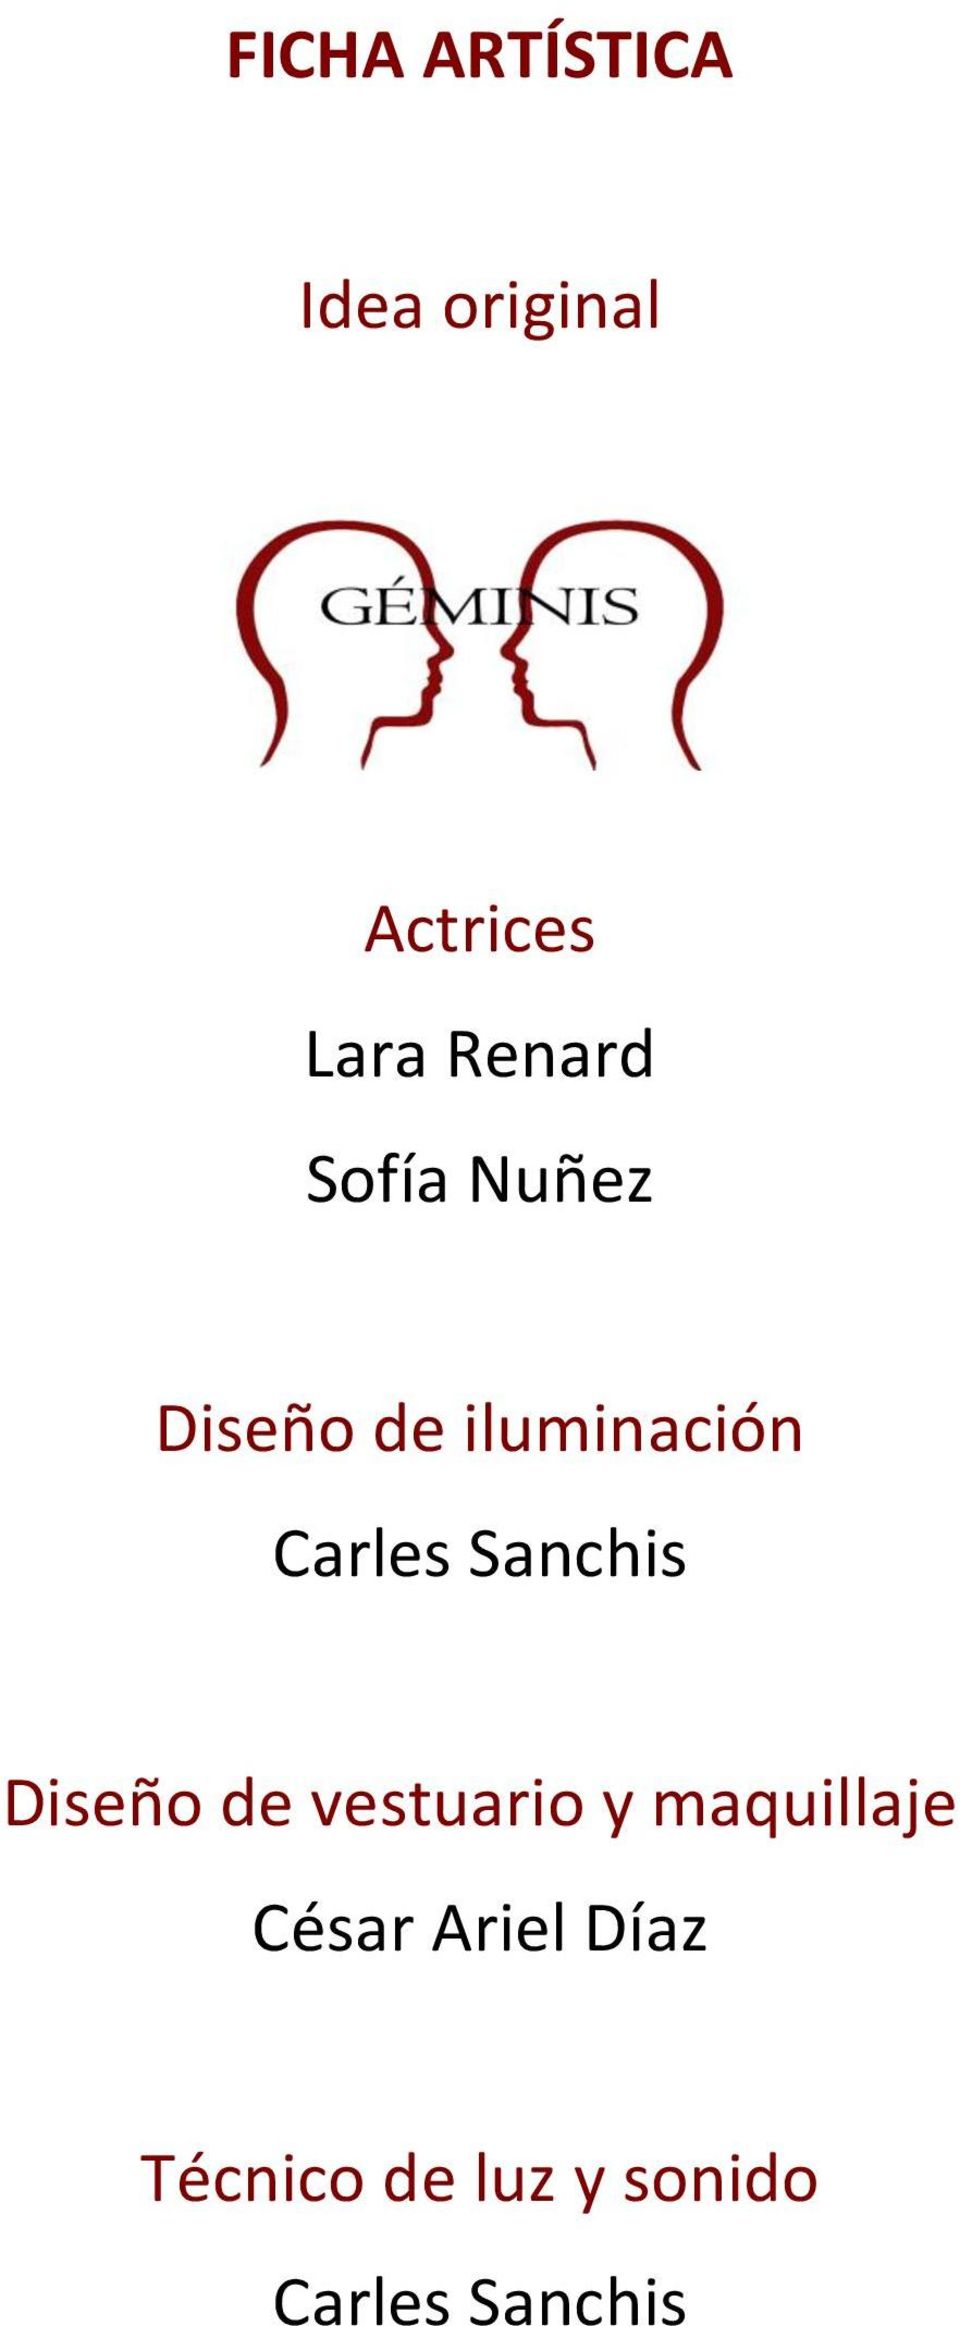 Carles Sanchis Diseño de vestuario y